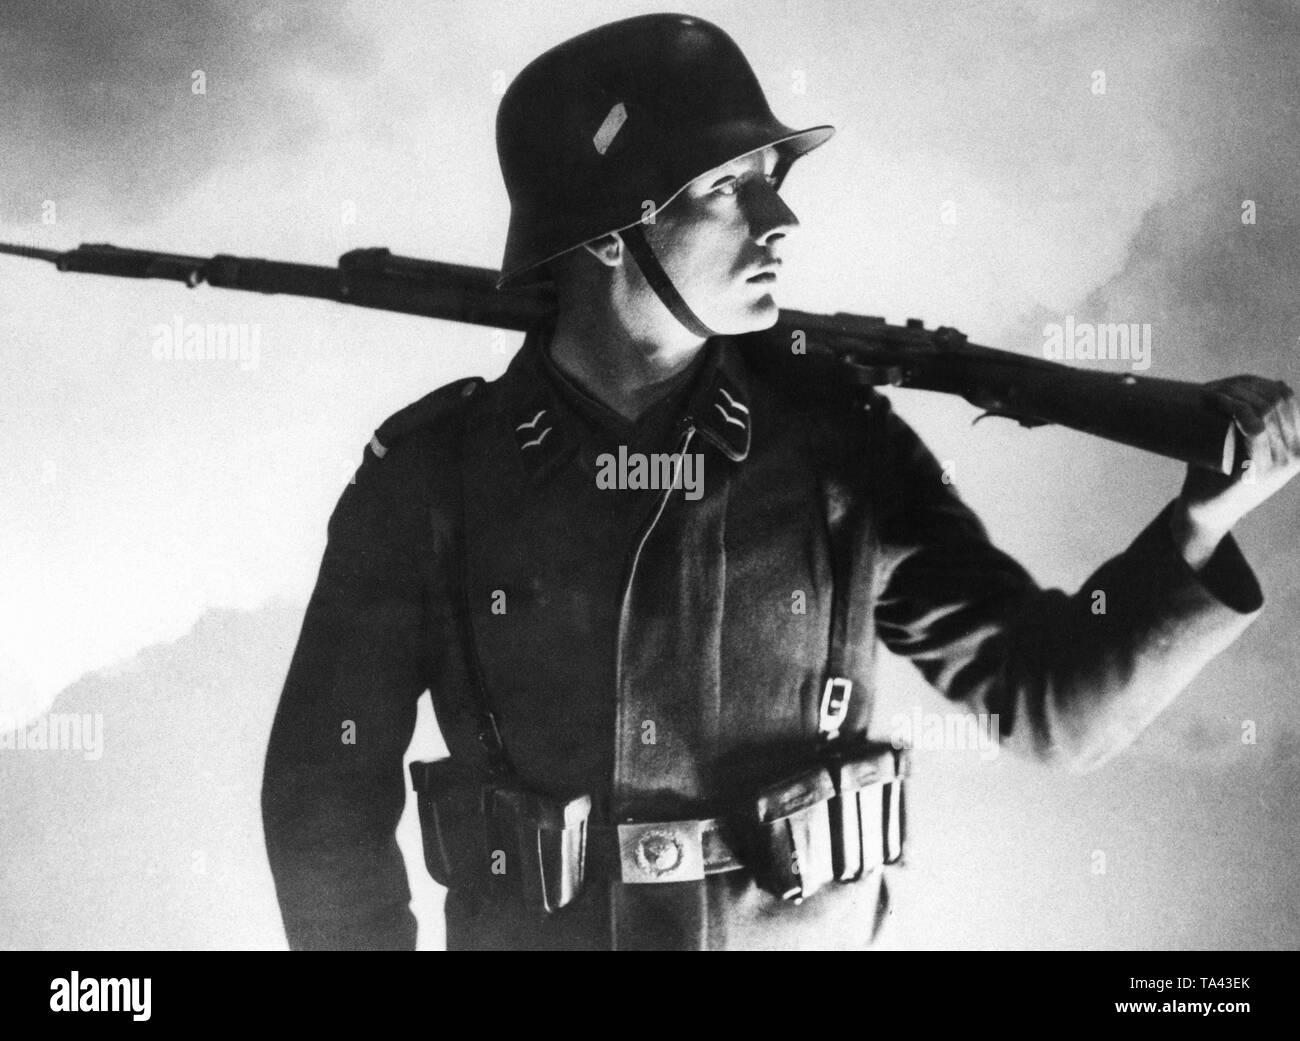 Ein Soldat der Deutschen Luftwaffe in Uniform, sein Gewehr ist über seine Schulter gelegt. Stockfoto